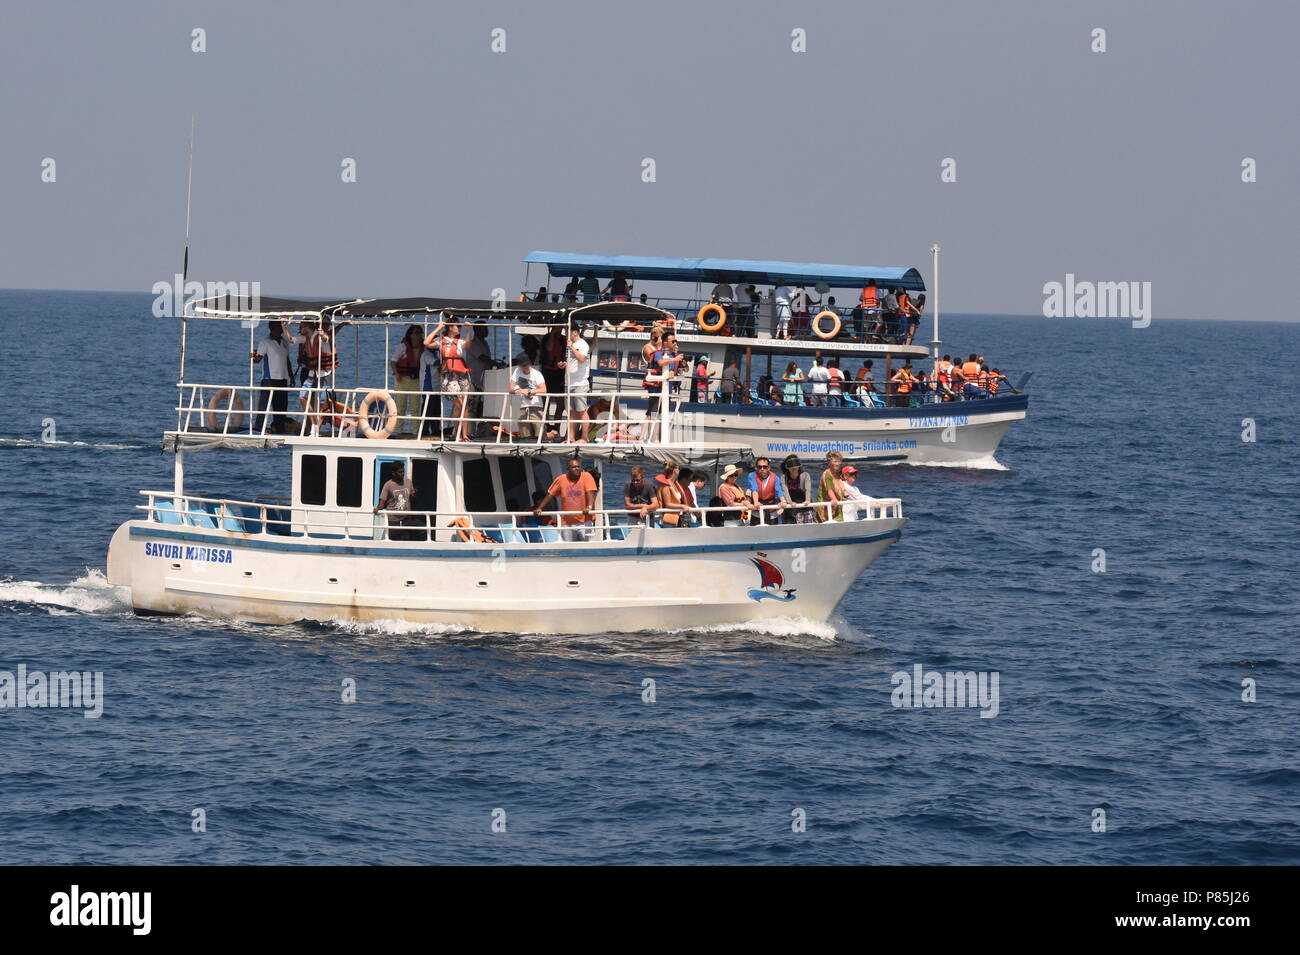 Walviskijkers uit de kust van Sri Lanka; Whale watchers on a ship off the coast of Sri Lanka Stock Photo